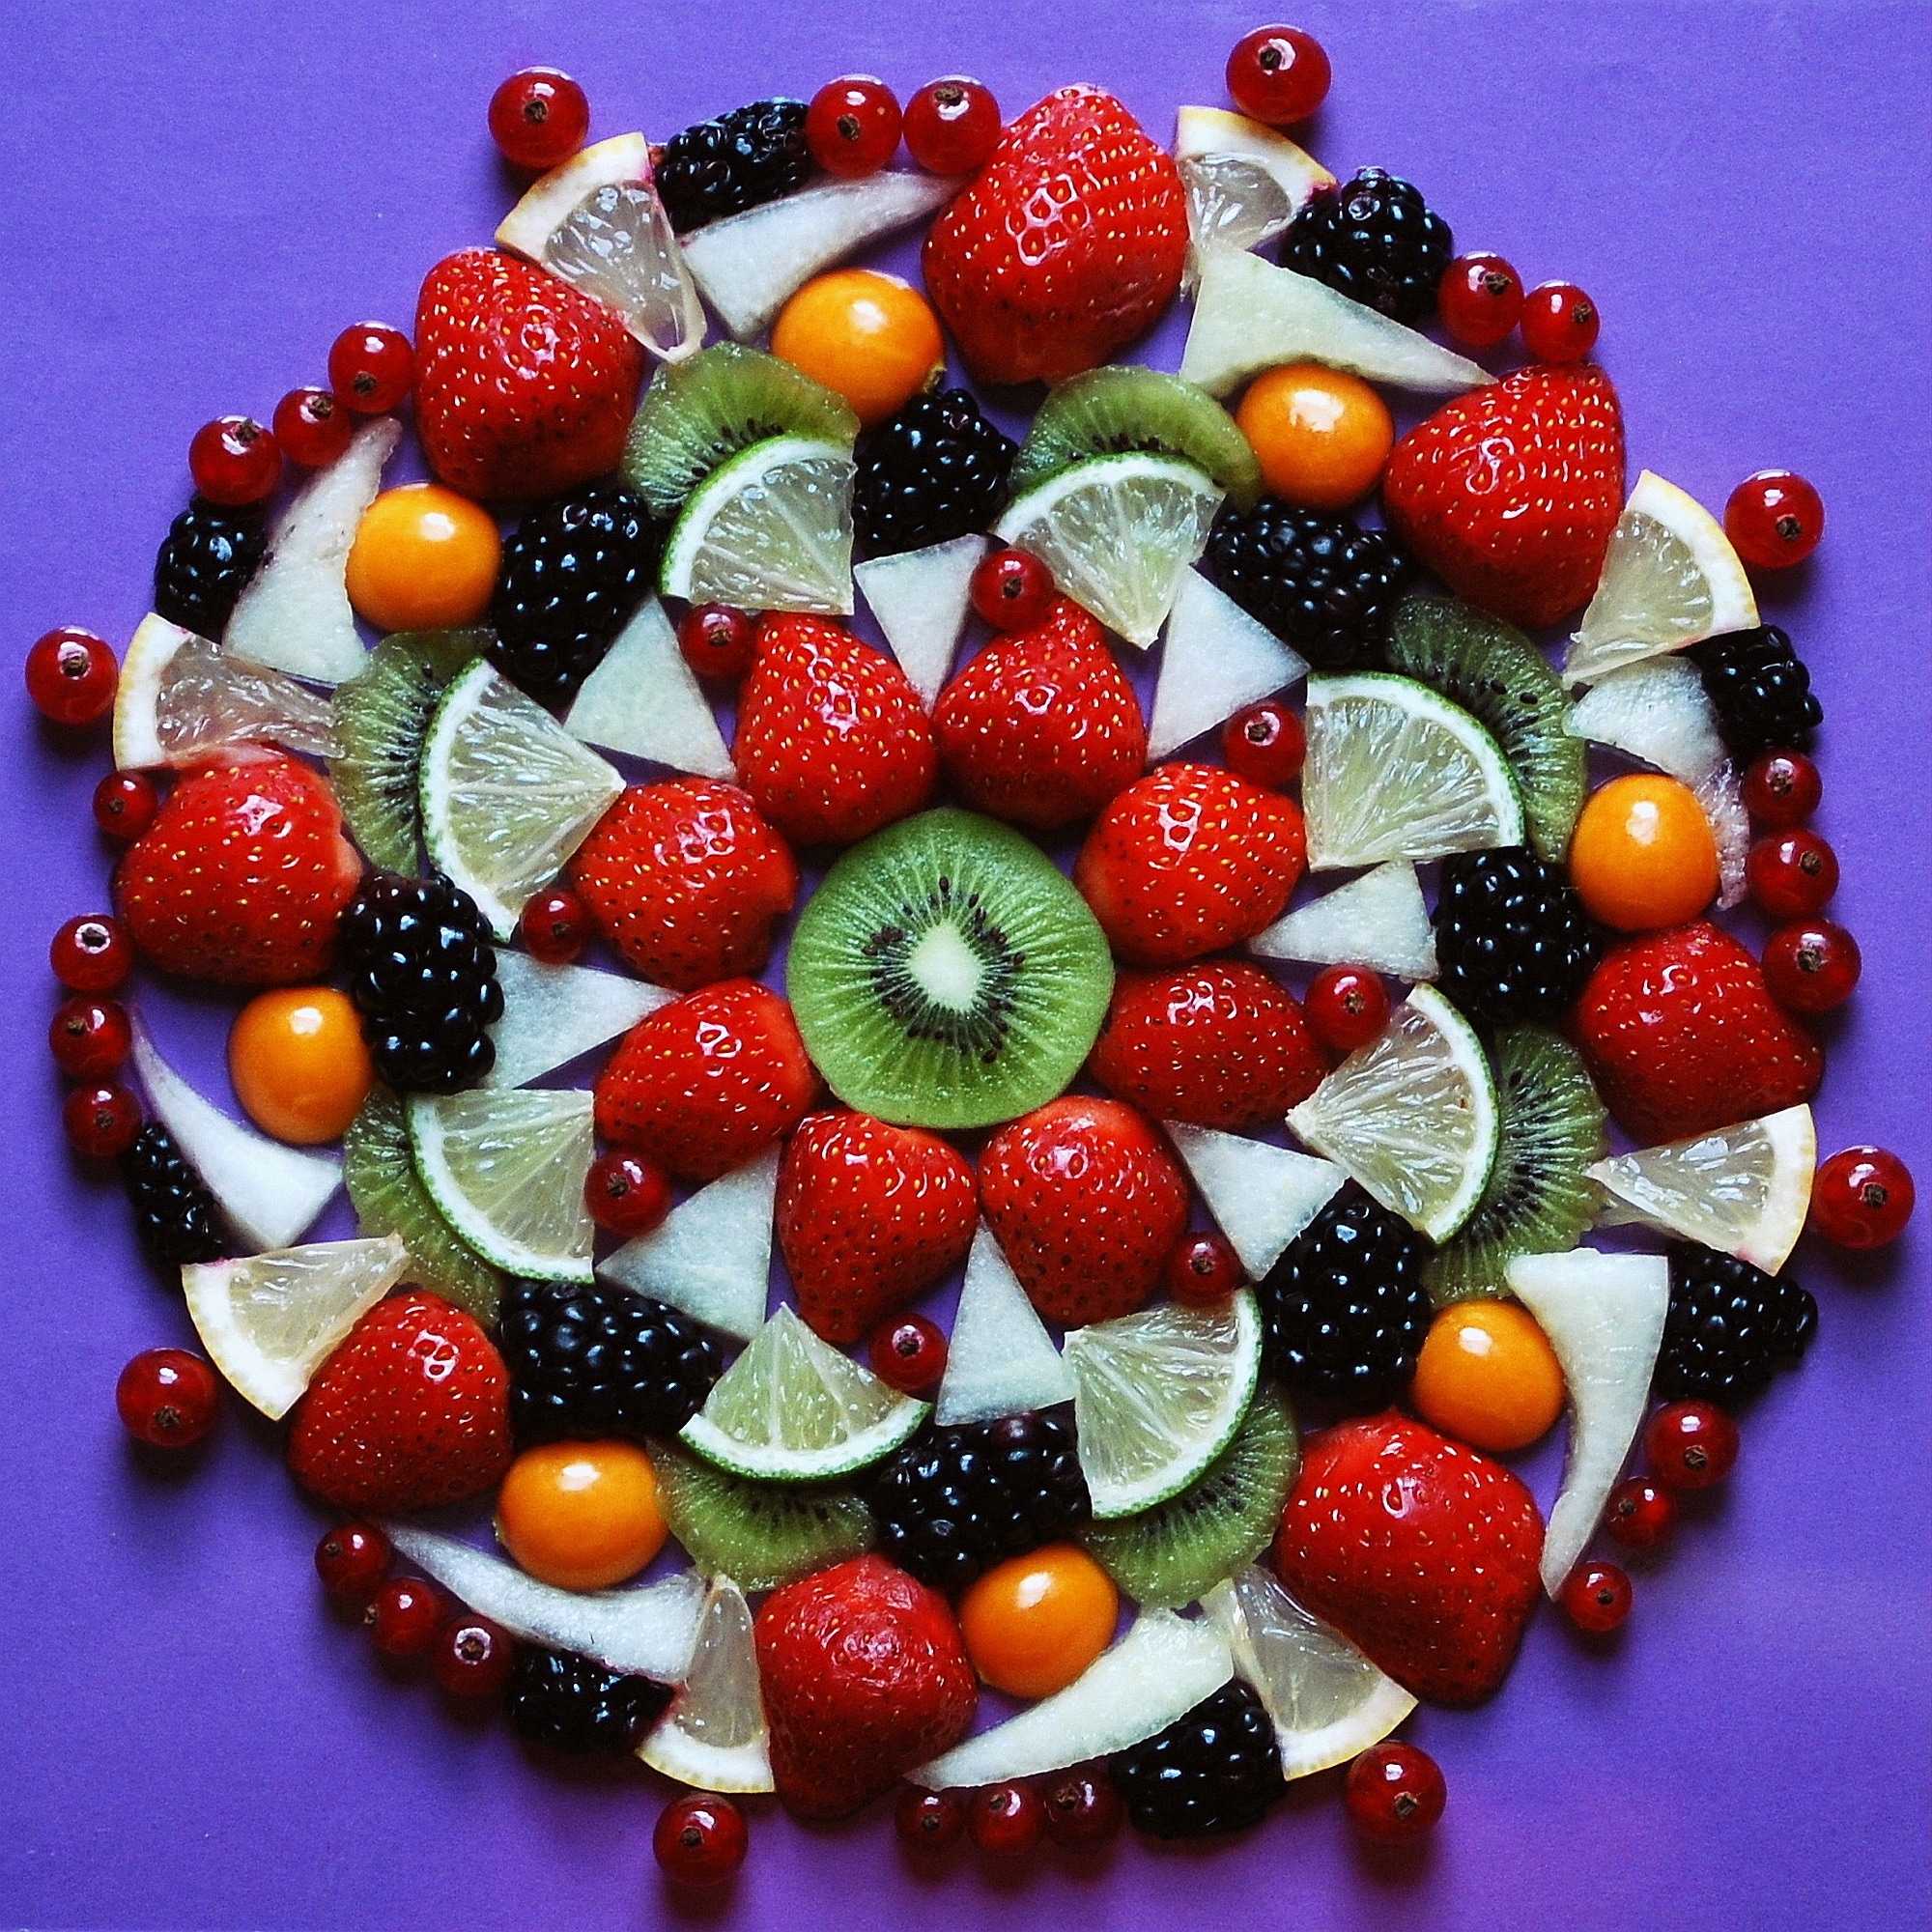 assorted sliced fruits